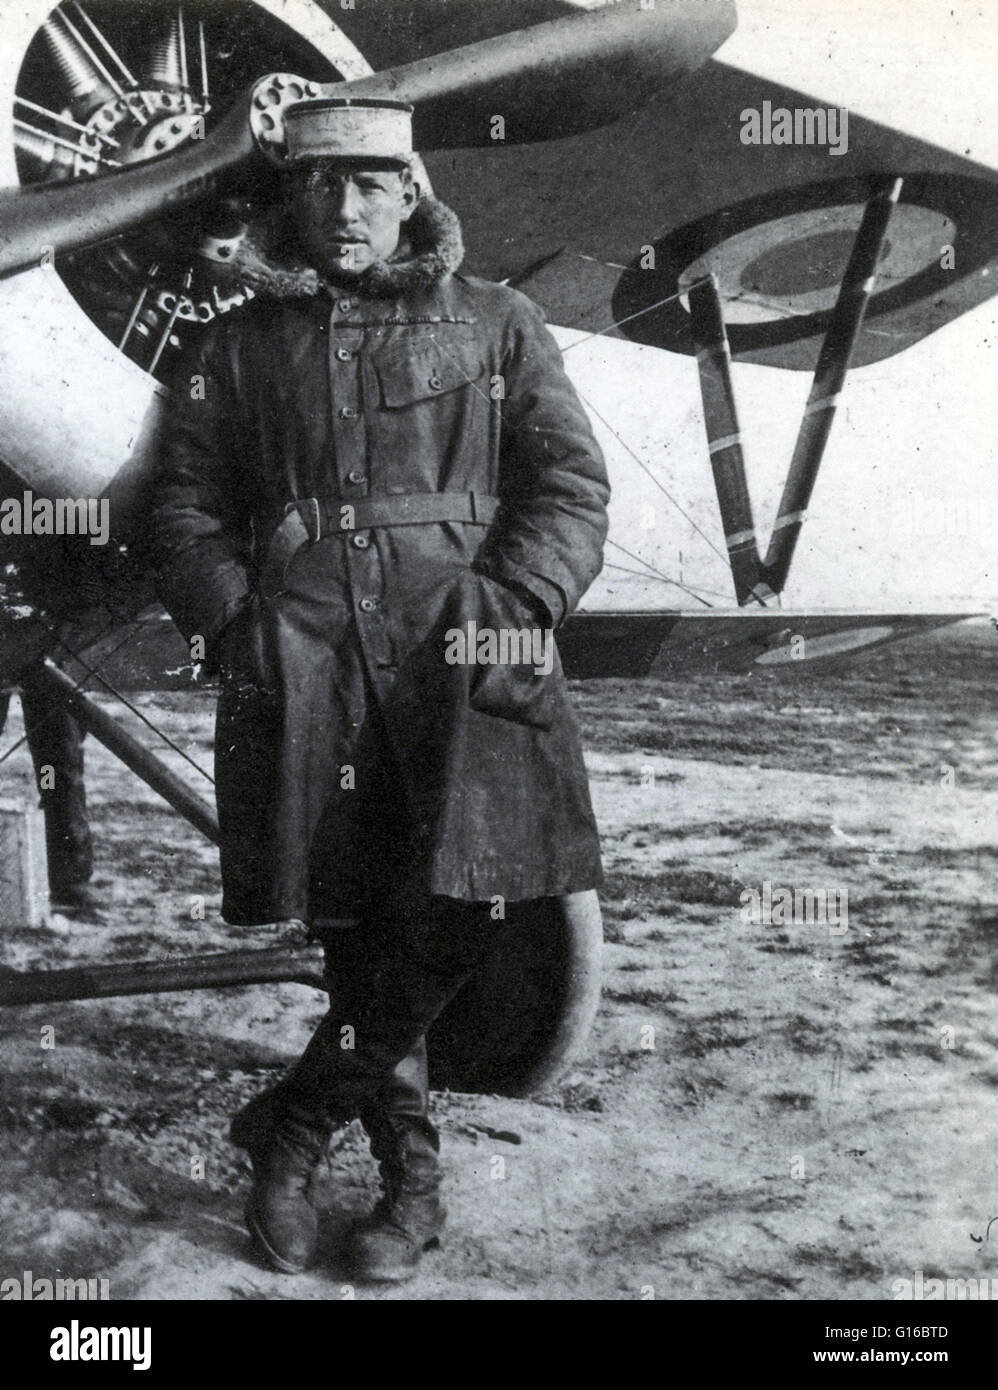 Charles Eugène Jules Marie Nungesser (15. März 1892 - 8. Mai 1927) war ein Erster Weltkrieg französischer flying Ace Bewertung dritte höchste im Land für Luft Kampf Siegen. Er reiste nach Südamerika, wo er als Automechaniker arbeitete, bevor Sie zu einem p Stockfoto